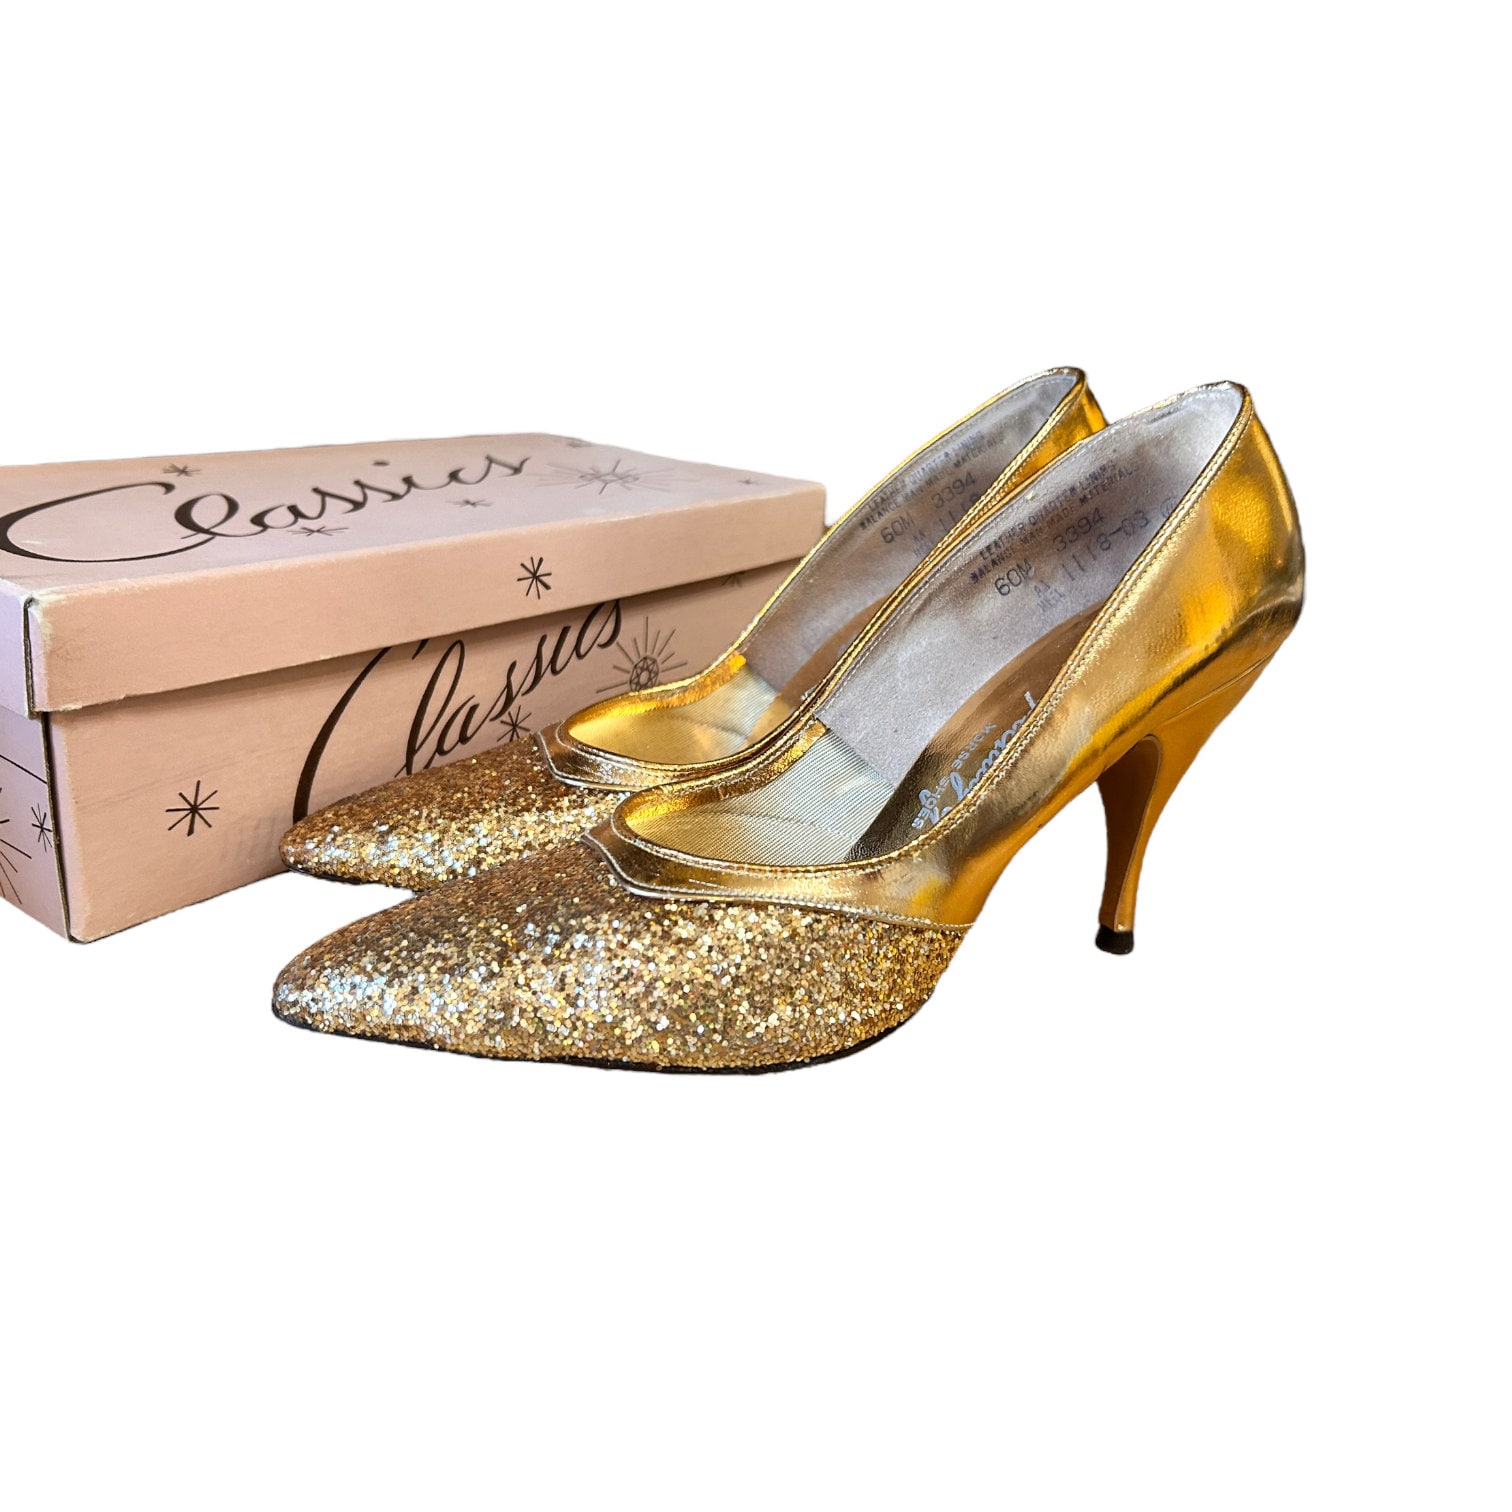 Red & Gold Spiked Heels | Stiletto heels platform, Stiletto heels, Heels